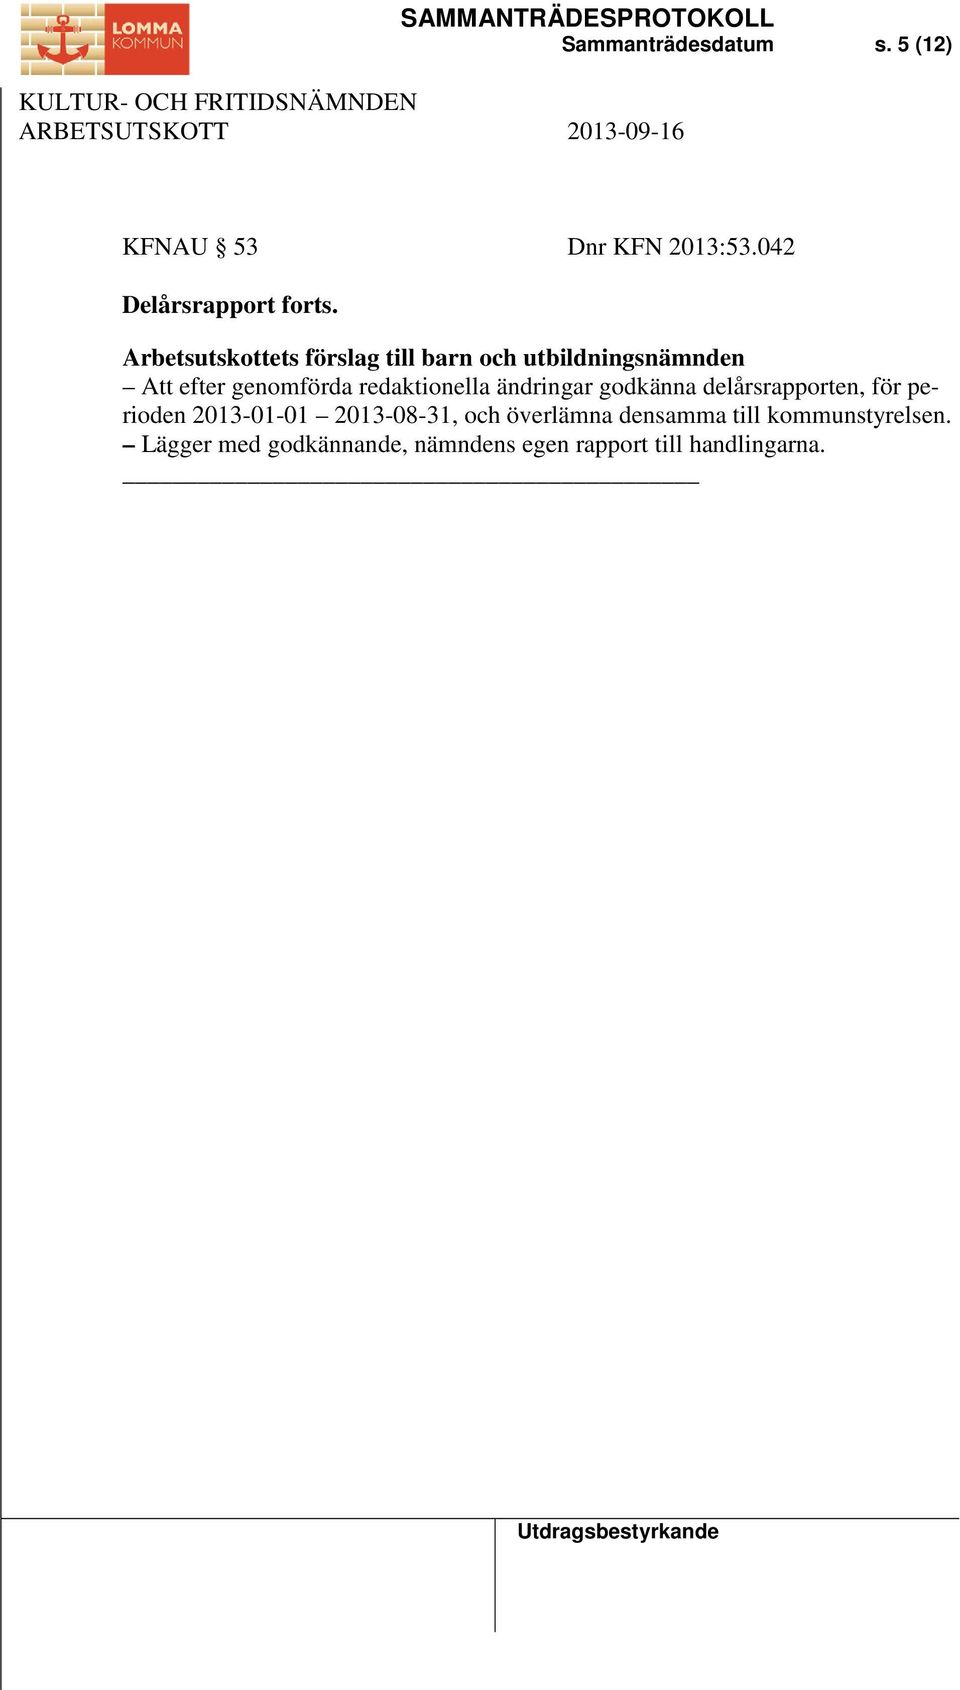 redaktionella ändringar godkänna delårsrapporten, för perioden 2013-01-01 2013-08-31,